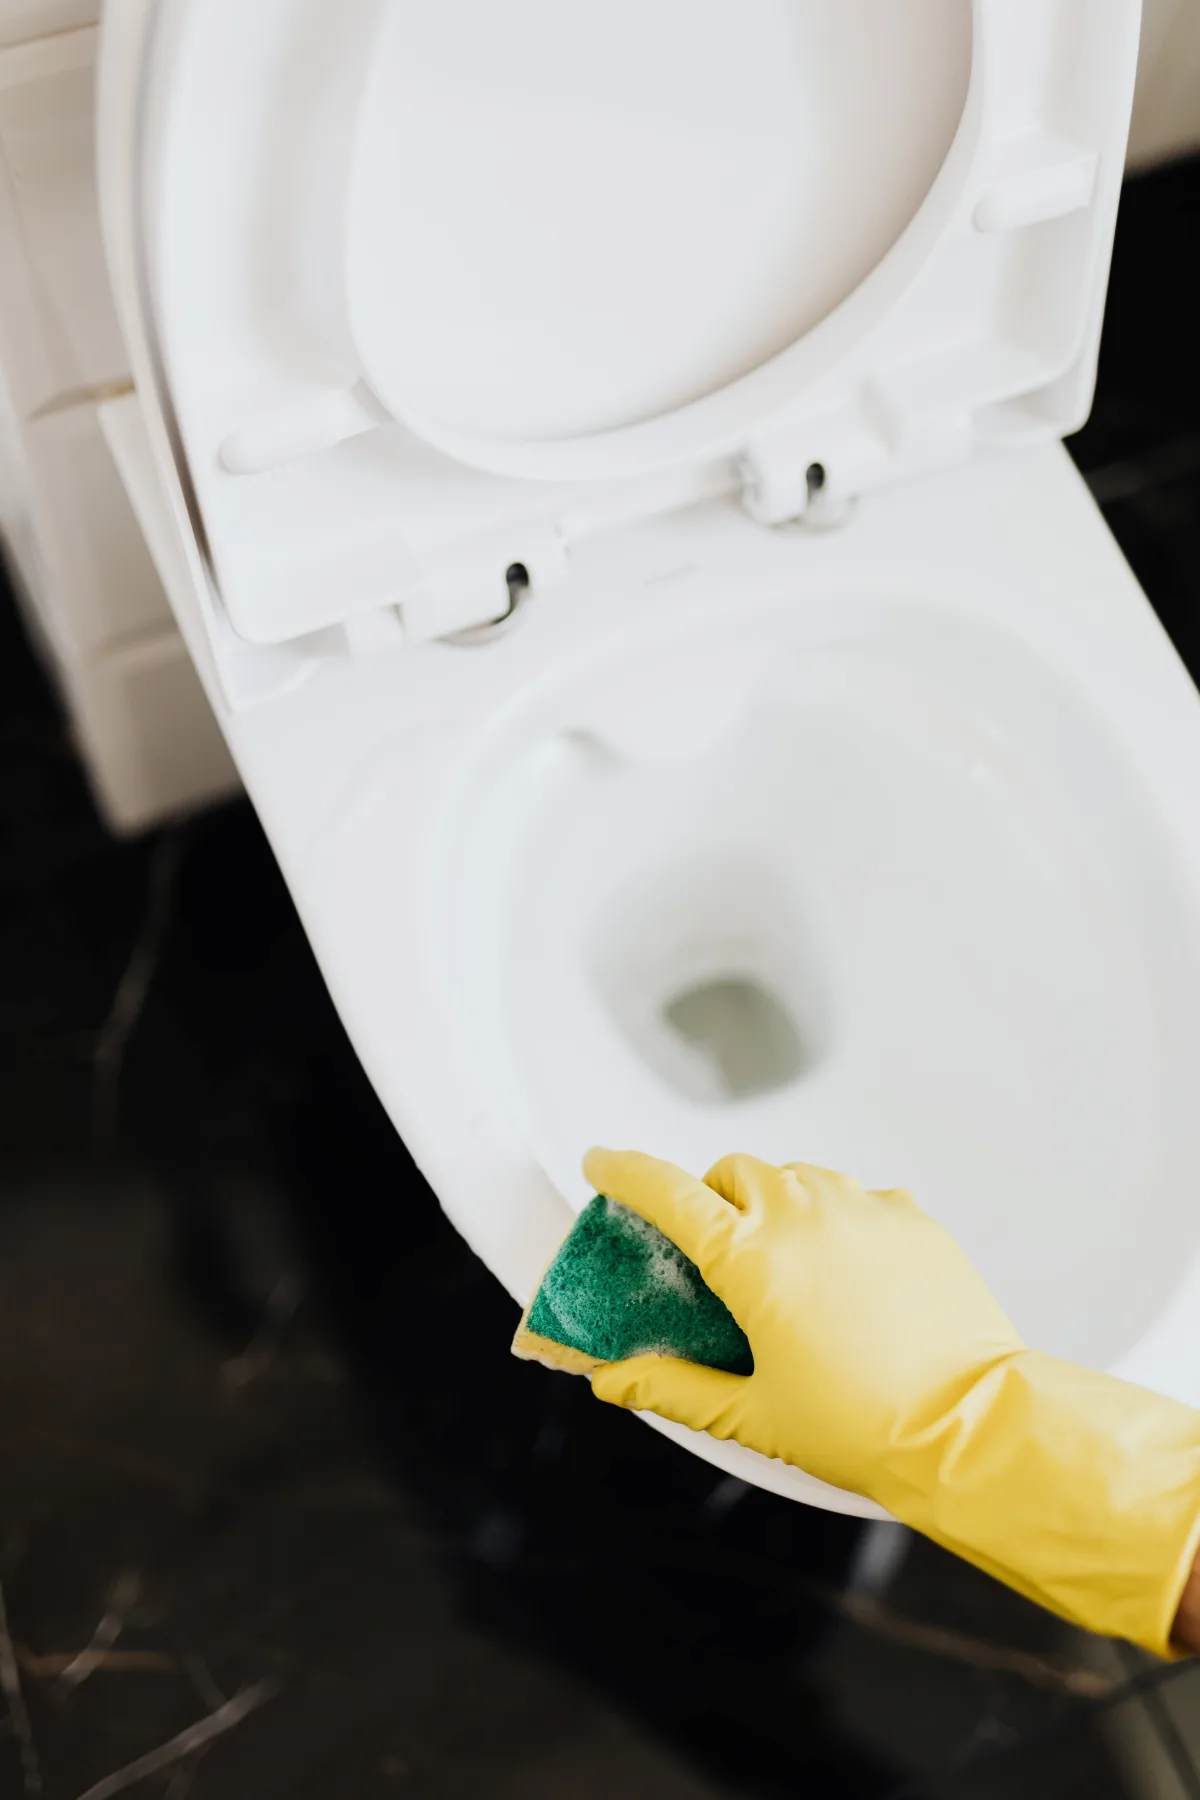 comment enlever l odeur d urine dans les toilettes guide complet